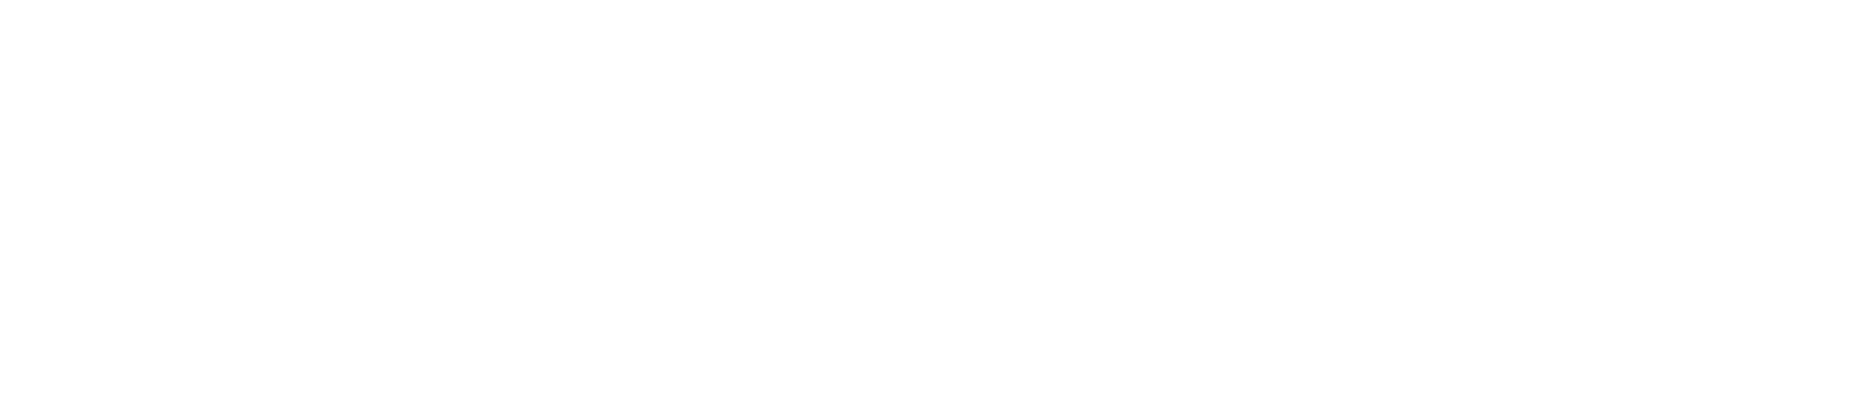 St John Catholic Church